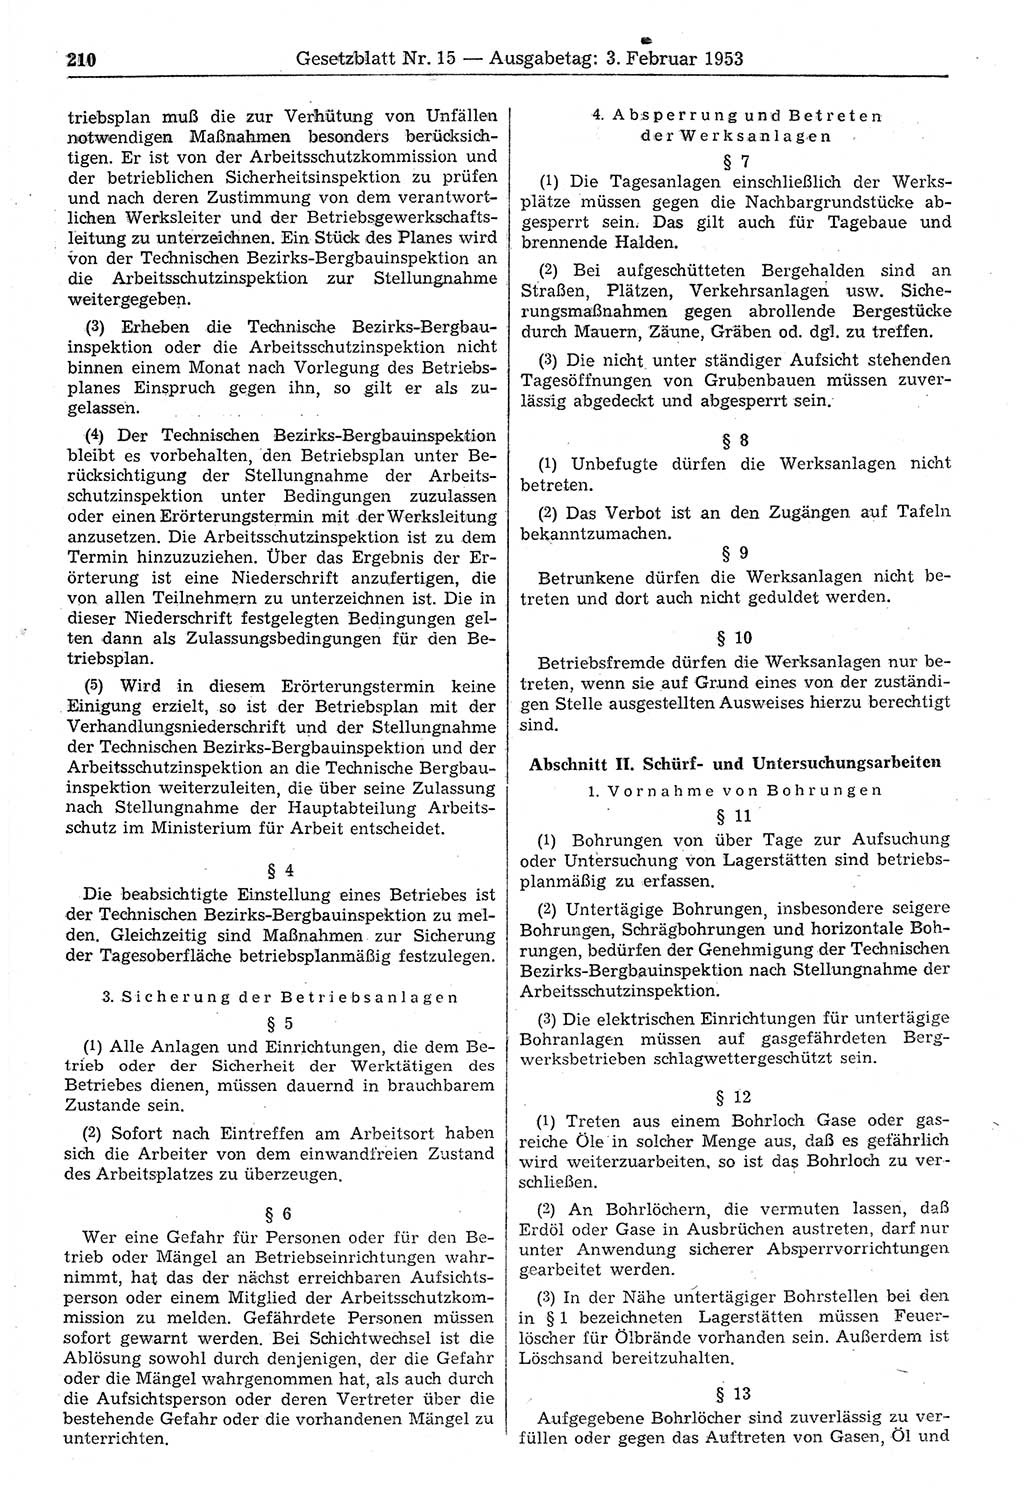 Gesetzblatt (GBl.) der Deutschen Demokratischen Republik (DDR) 1953, Seite 210 (GBl. DDR 1953, S. 210)